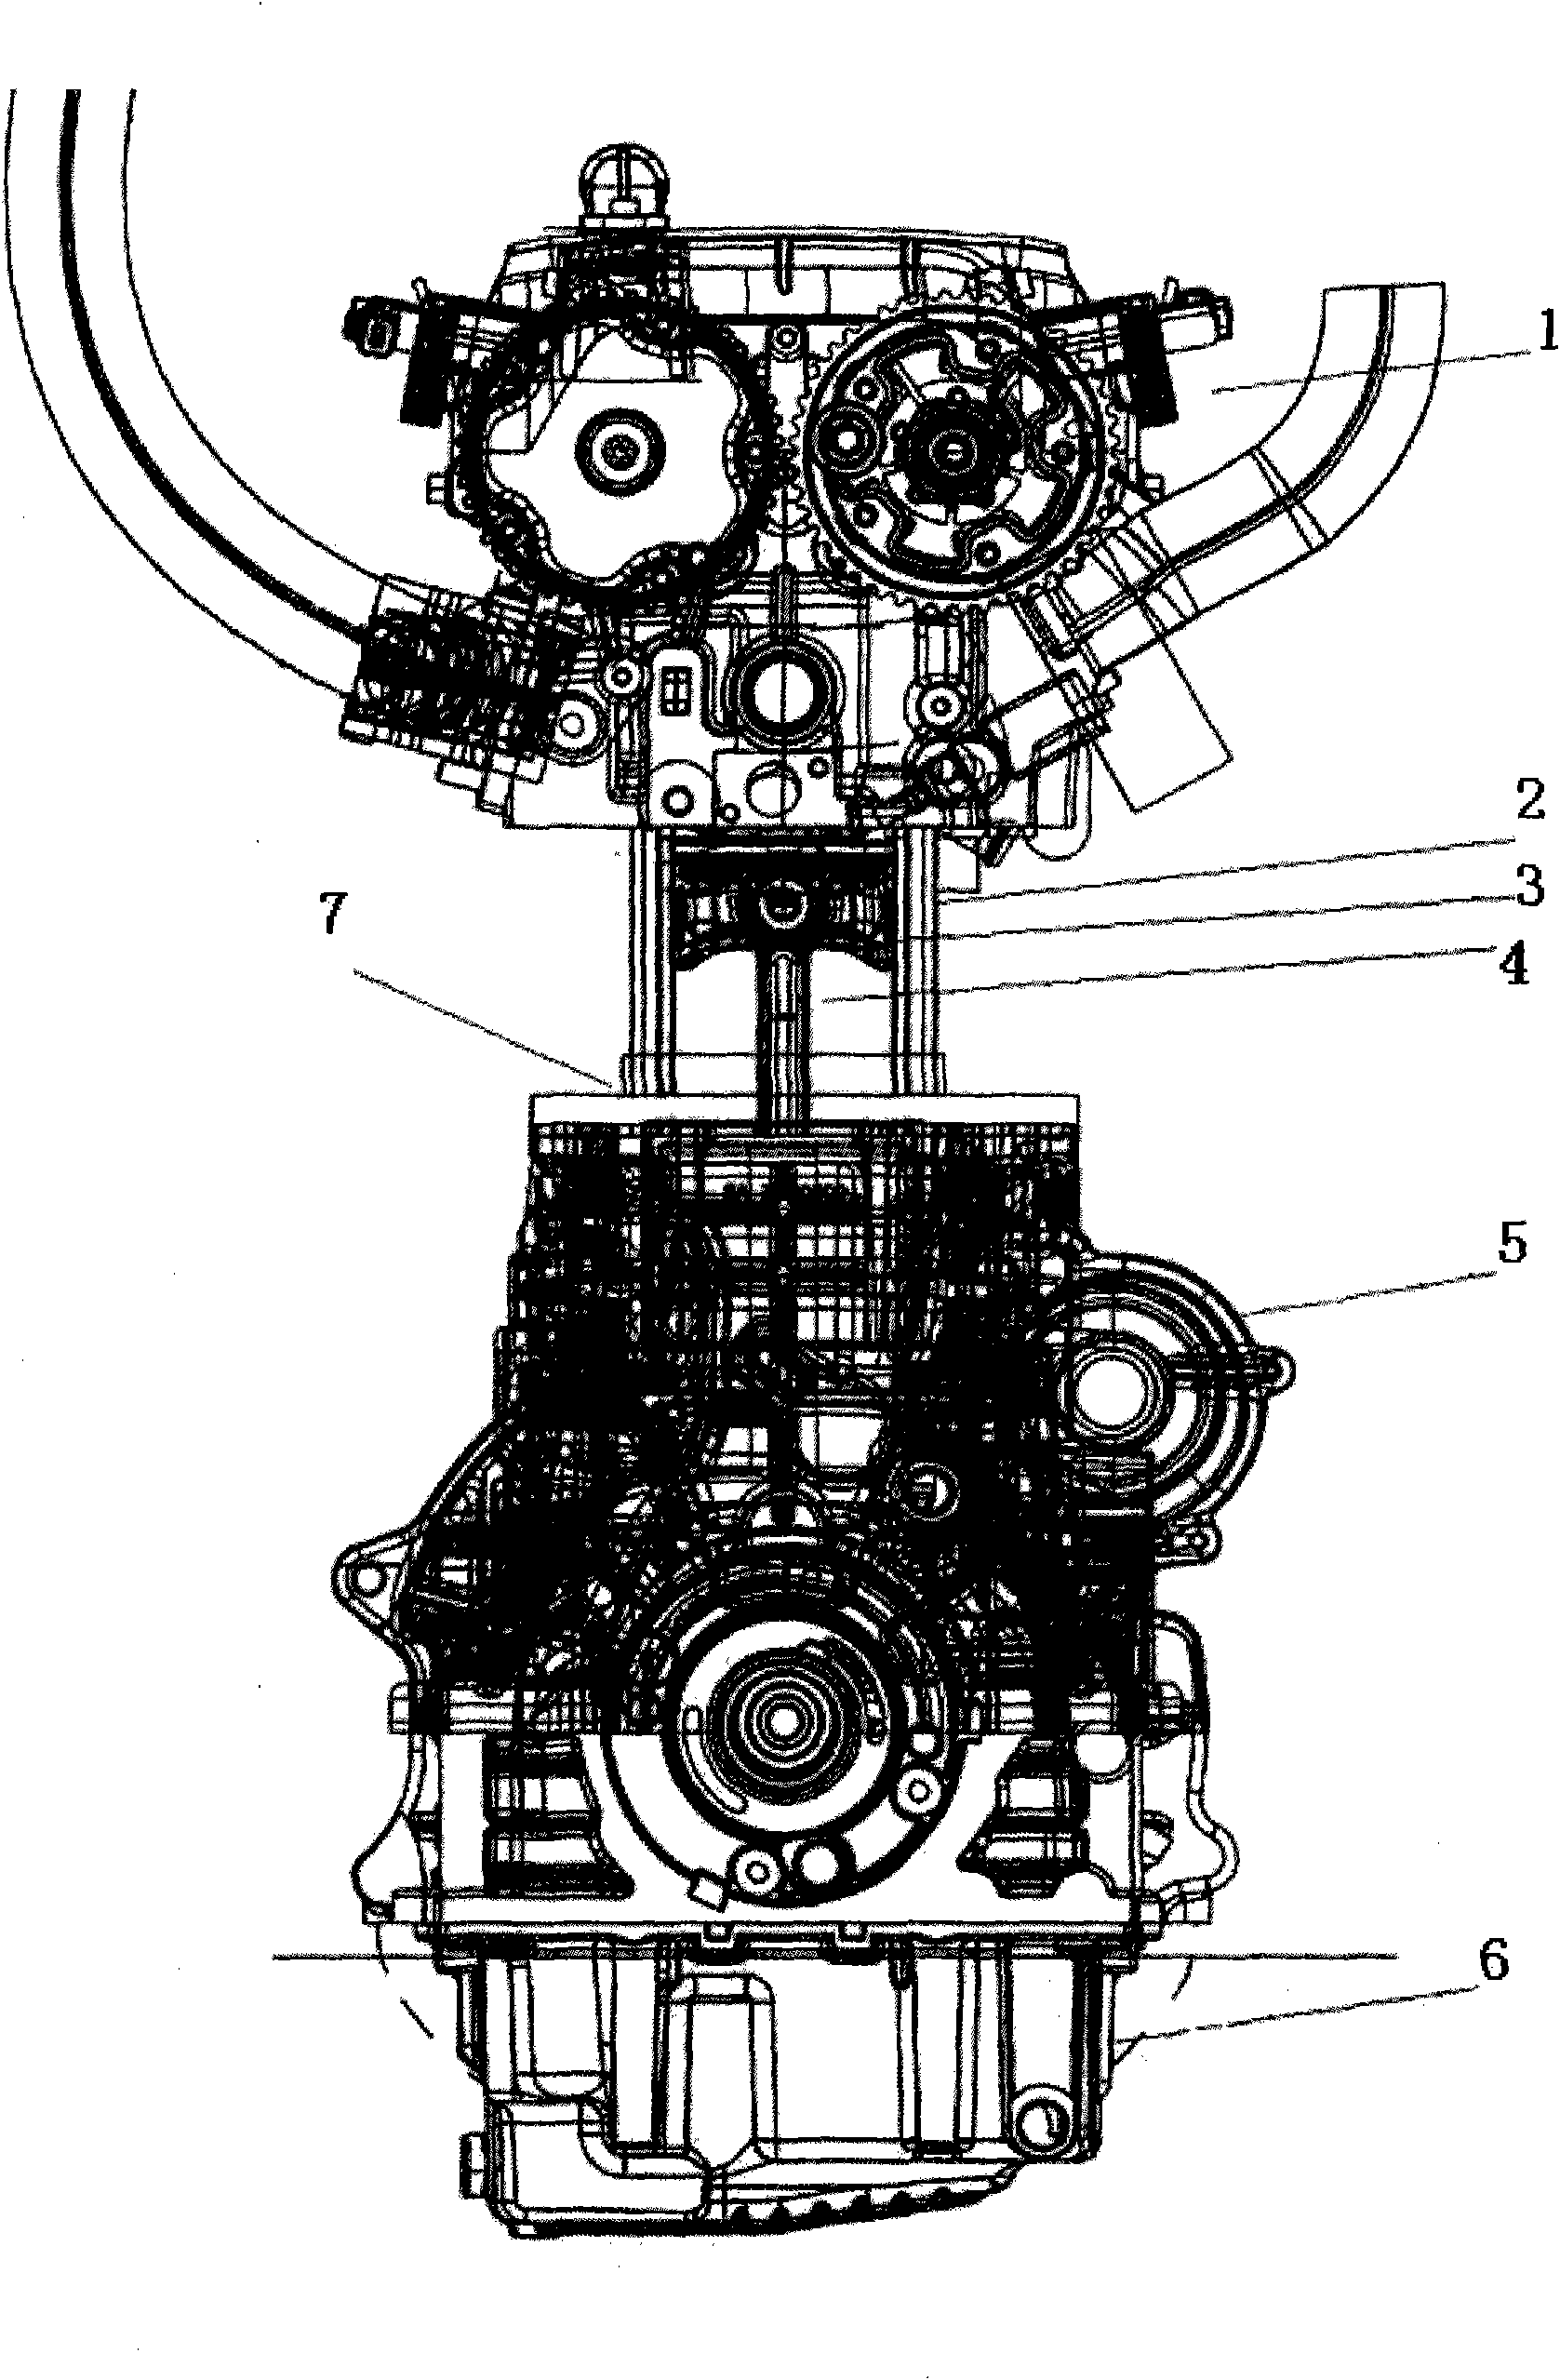 Optical engine